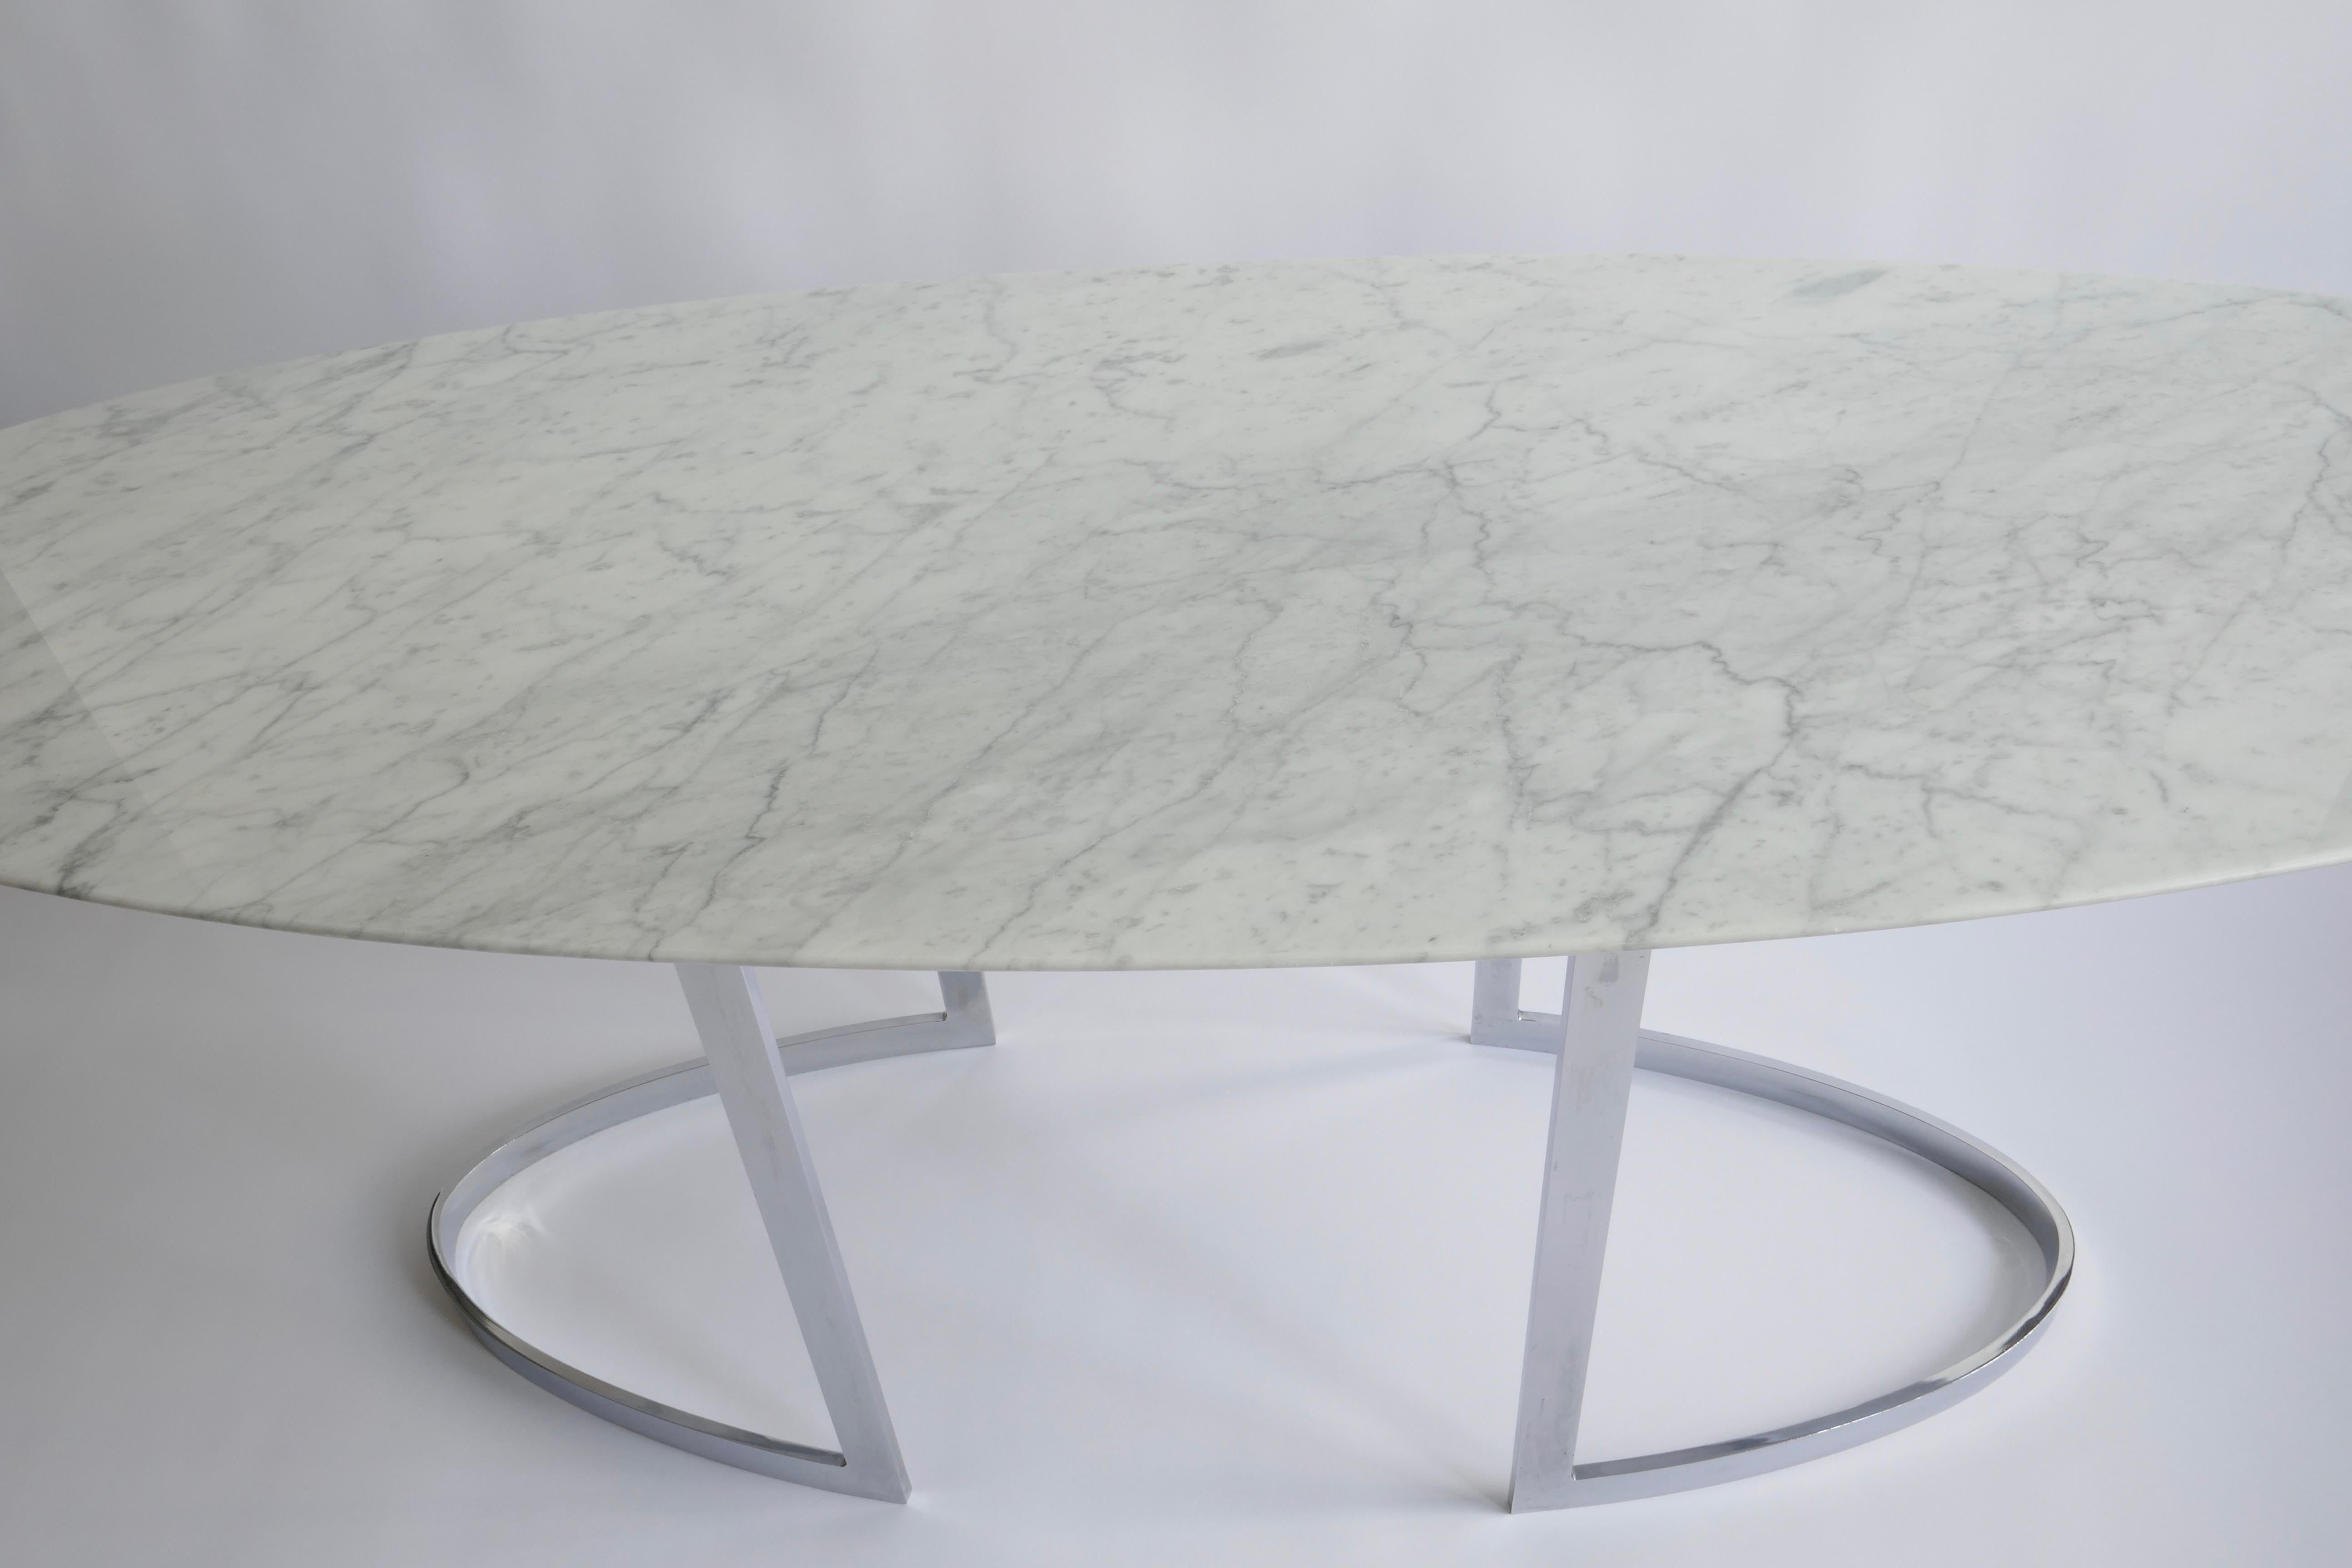 Une élégante table console polyvalente de forme ovale qui peut facilement devenir un bureau et/ou une petite table à manger. Base en pieds arrondis chromés.
Mesures : L 195cm
W 70cm.